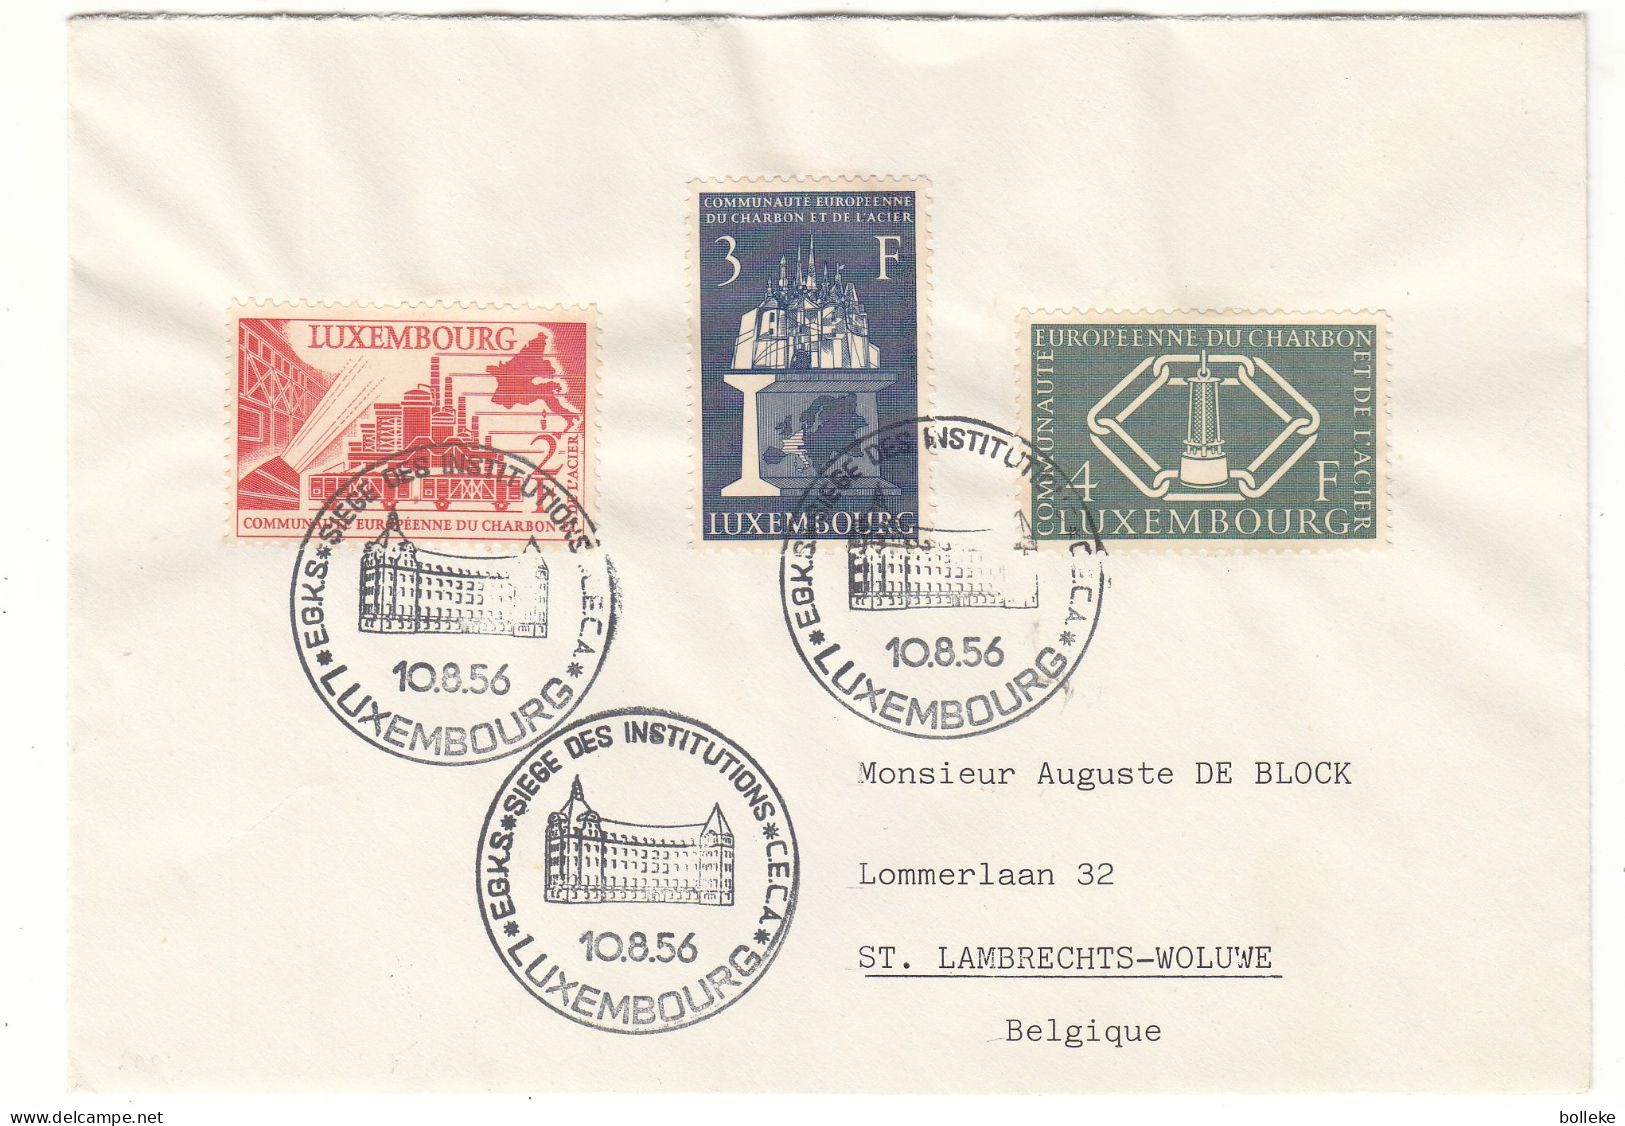 Luxembourg - Lettre De 1956 - Oblit Luxembourg - Idées Européennes - Charbon & Acier - Valeur 35 Euros - Covers & Documents